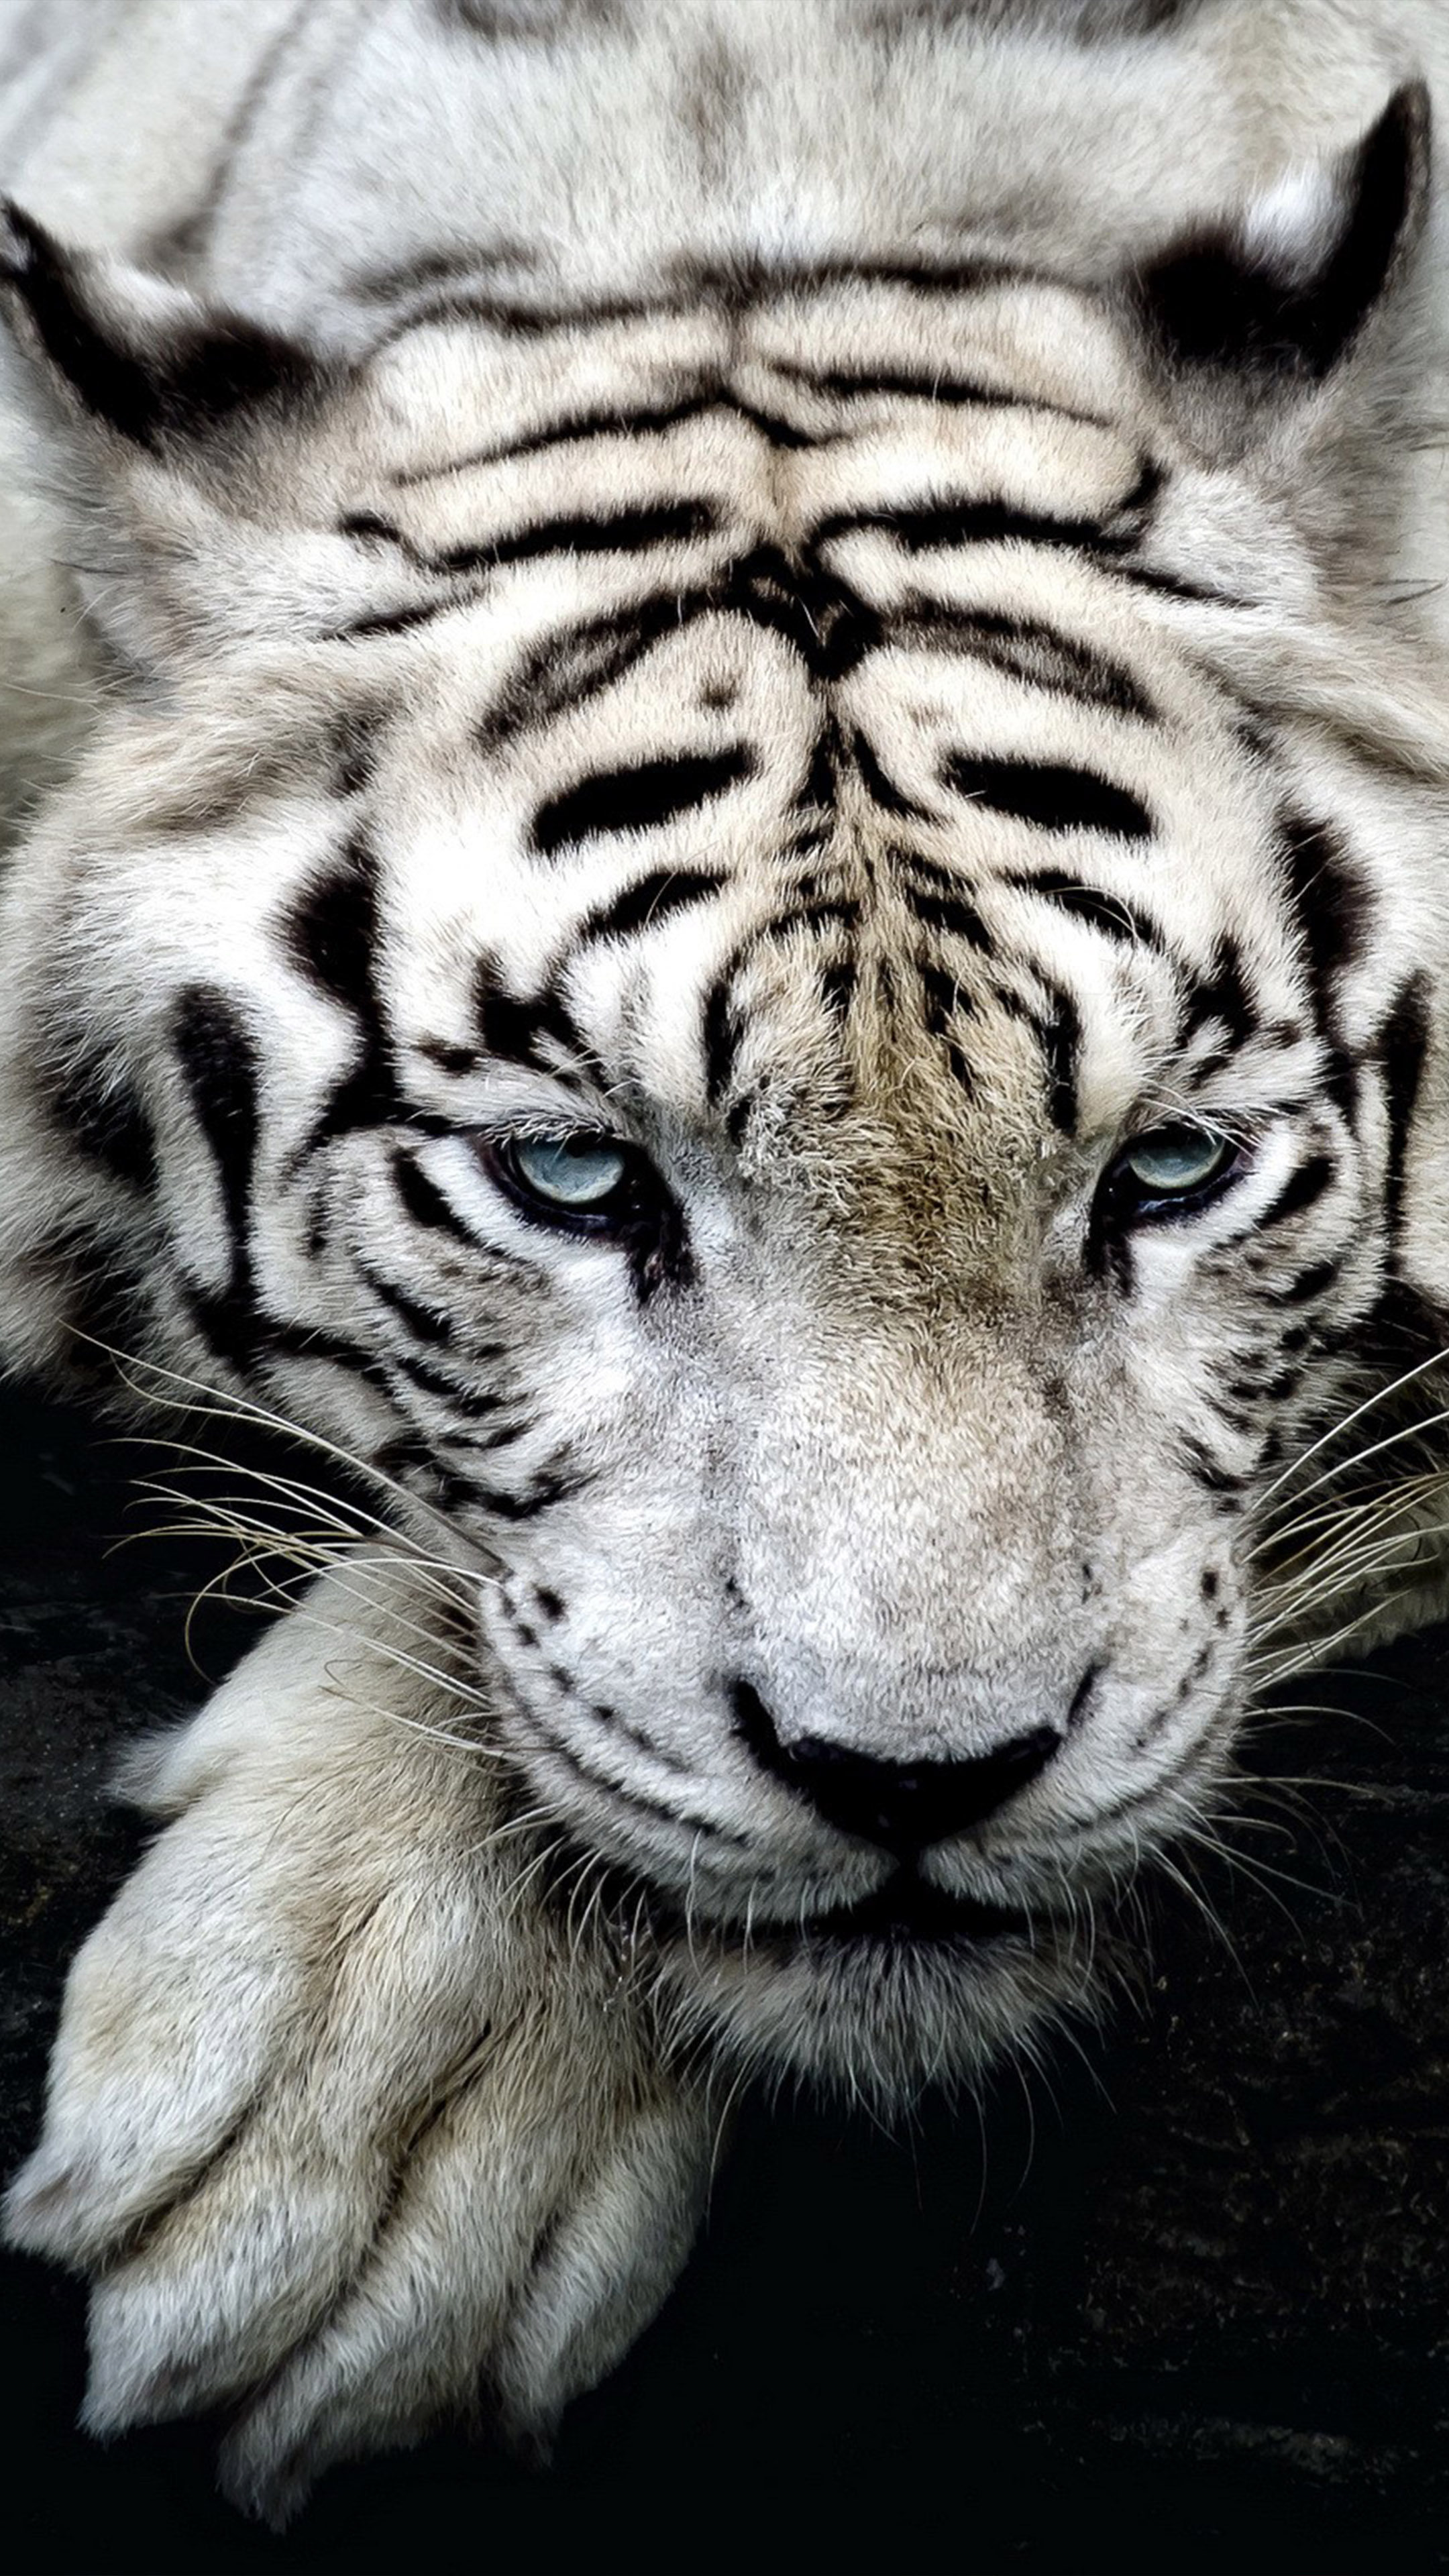 Con hổ là một trong những loài động vật hoang dã đẹp nhất và mạnh mẽ nhất trên thế giới. Hãy xem hình ảnh về con hổ để được chiêm ngưỡng vẻ đẹp kỳ diệu của chúng.